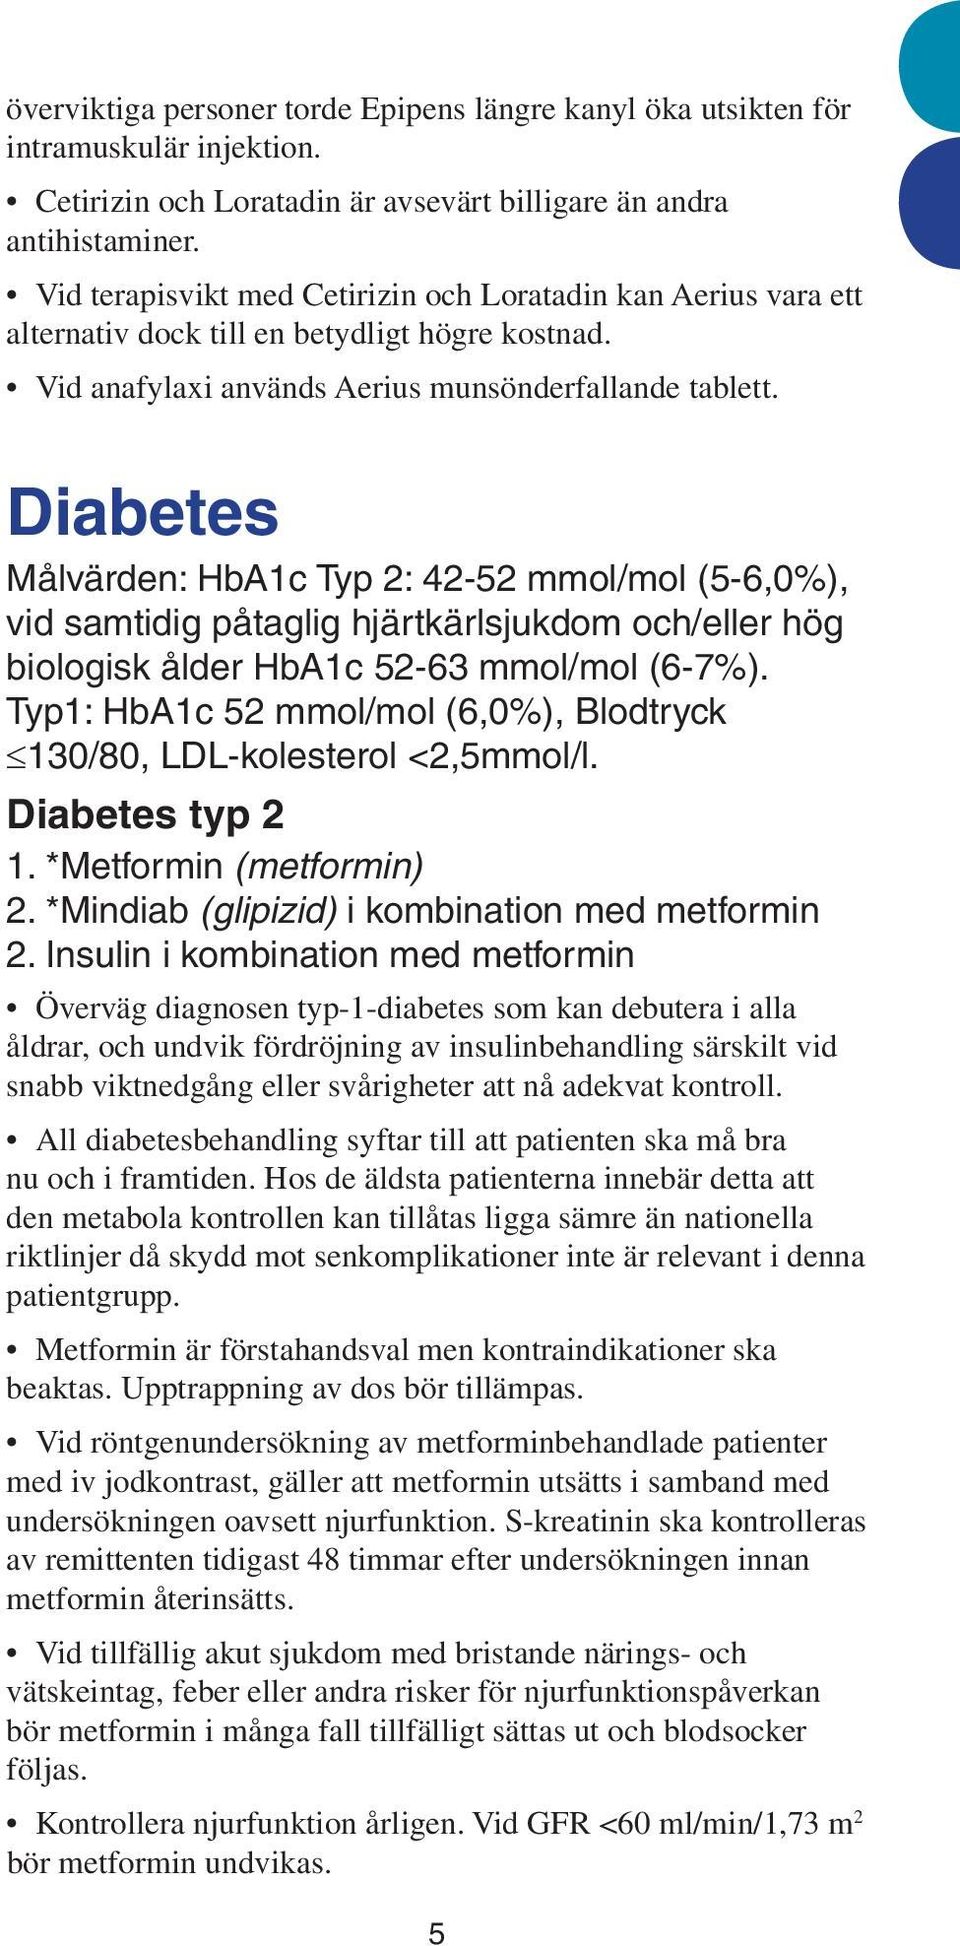 Diabetes Målvärden: HbA1c Typ 2: 42-52 mmol/mol (5-6,0%), vid samtidig påtaglig hjärtkärlsjukdom och/eller hög biologisk ålder HbA1c 52-63 mmol/mol (6-7%).